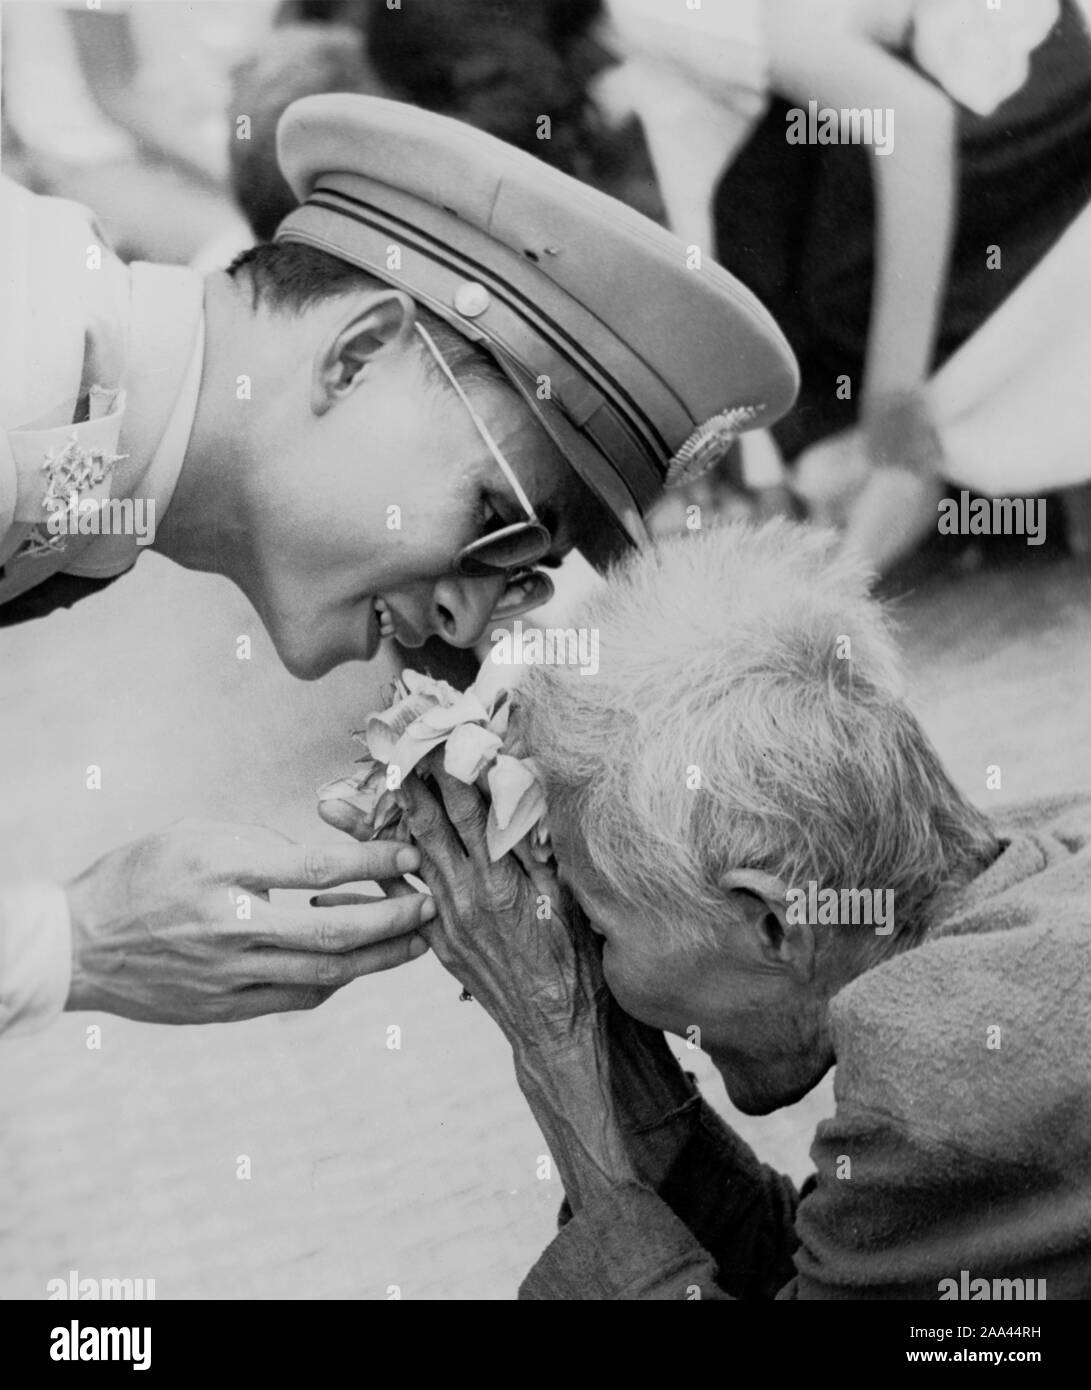 Channich "TUM' vieille femme 102 ans Bienvenue le Roi Bhumibol Adulyadej dans l'après-midi du 13 novembre 1955, pour la première visite au nord-est. Une vieille dame va accueillir avec Lotus Rose trois. Du matin à l'après-midi le soleil brûle jusqu'à ce que le lis dans la main. Quand le roi Bhumibol Adulyadej est arrivé la vieille dame a soulevé les lis fanés que trois jusqu'à la tête. Le roi se pencha jusqu'à ce que le visage était presque près de la tête de la vieille femme et sourit doucement, et a également pris la main de toucher les mains de la vieille femme dans la plus impressionnante thaïlandais. Banque D'Images